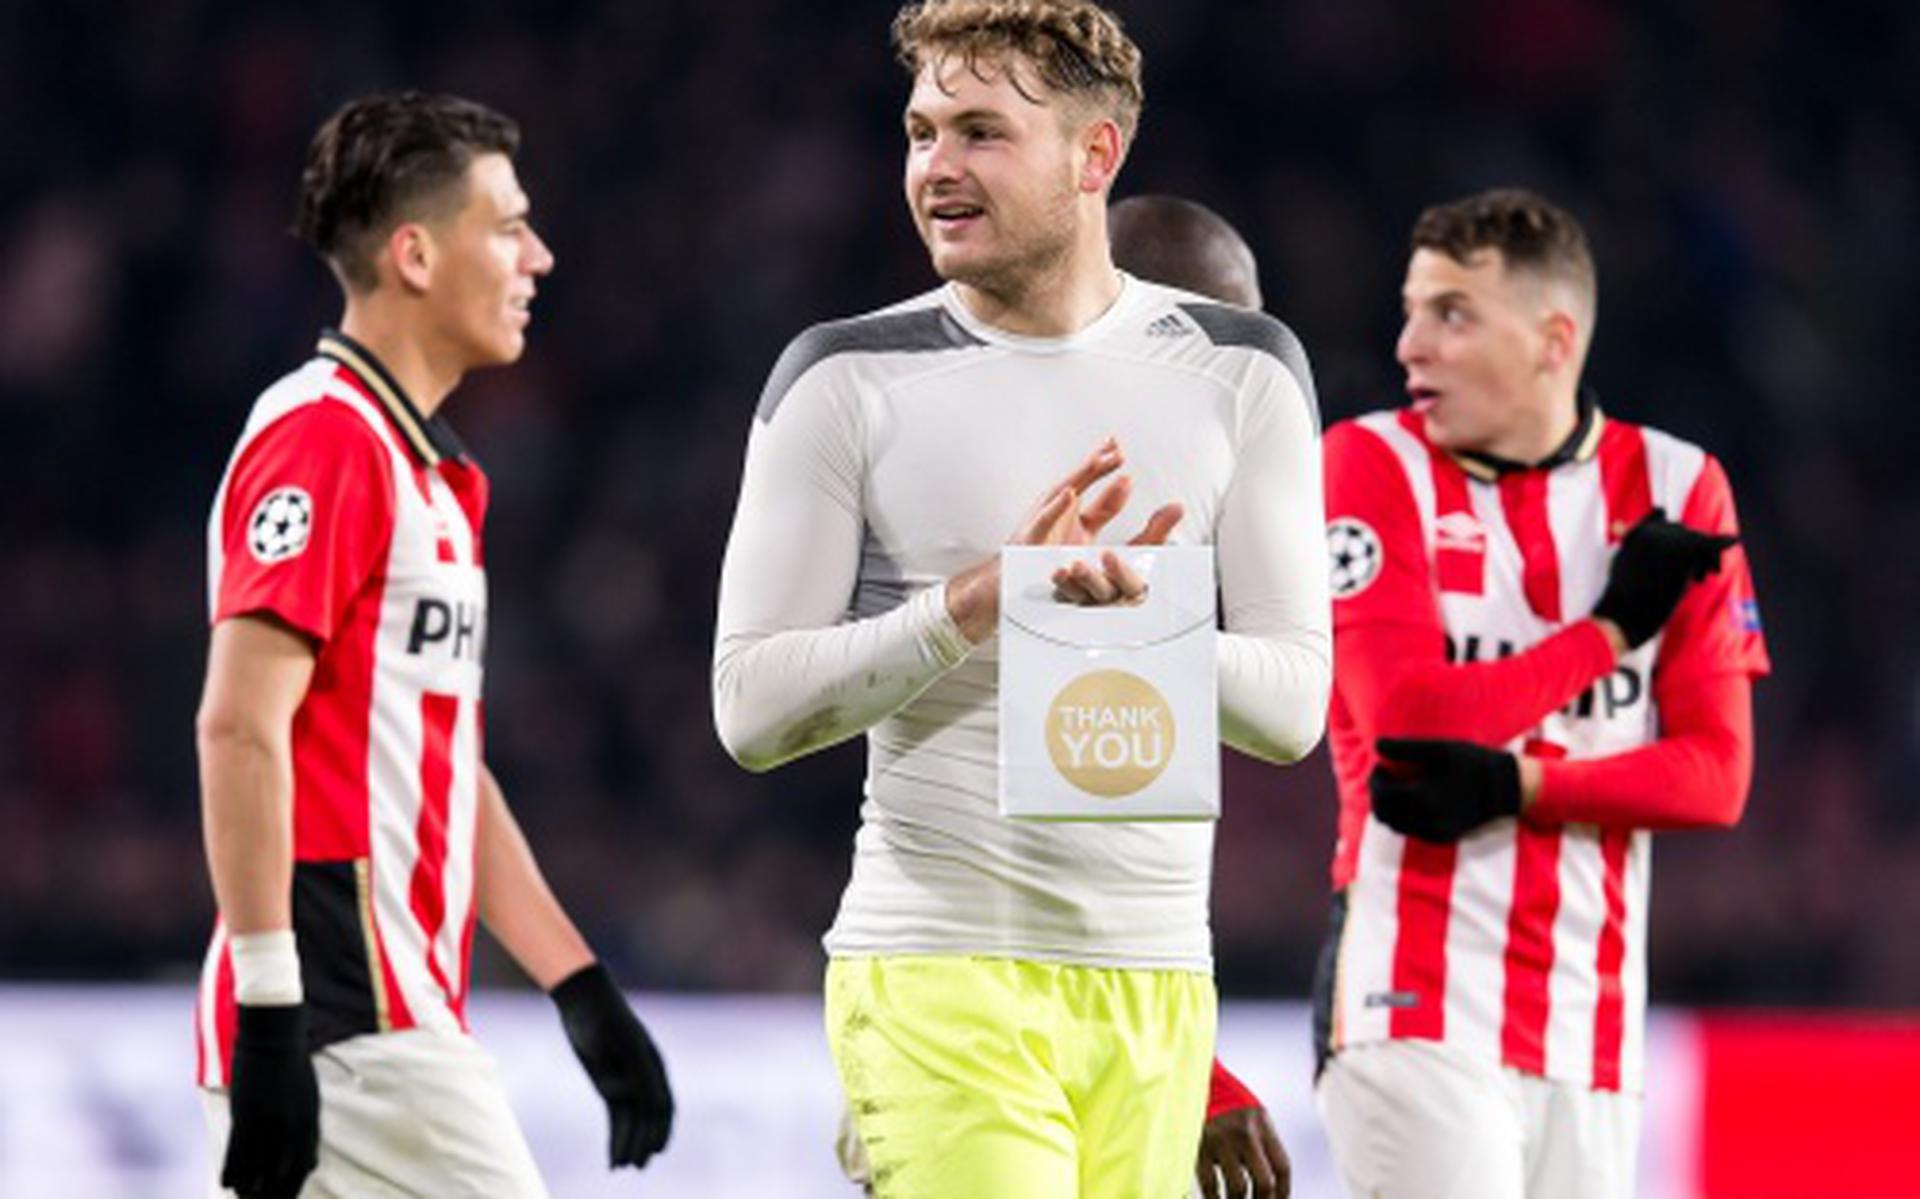 PSV’ers prijzen hun doelman